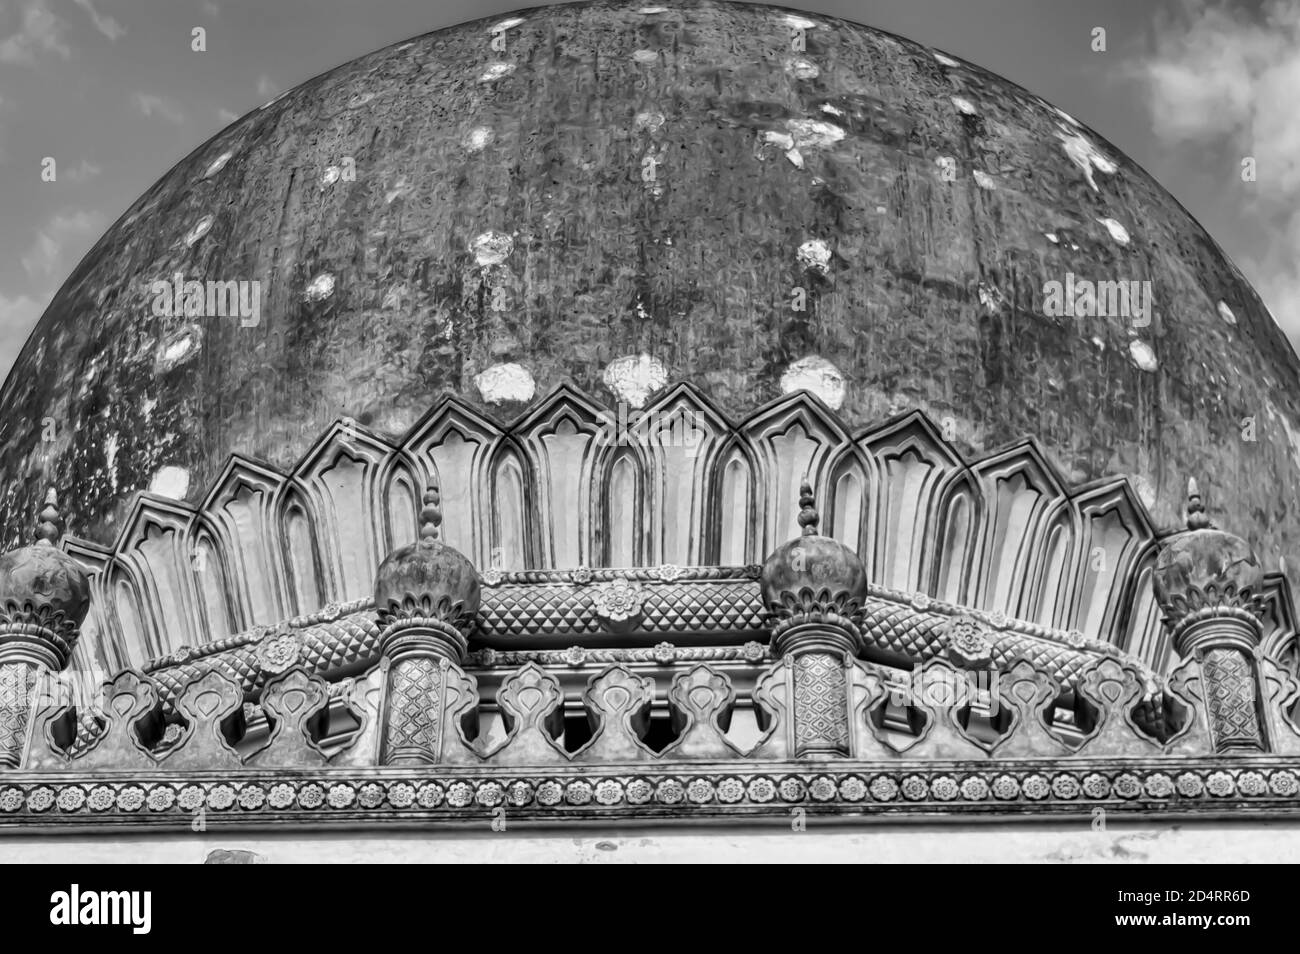 Un'immagine B&W della base della cupola del mausoleo di Hayat Bakshi Begum nel complesso delle Tombe Qutb Shahi situato a Ibrahim Bagh in Hyderabad. Foto Stock